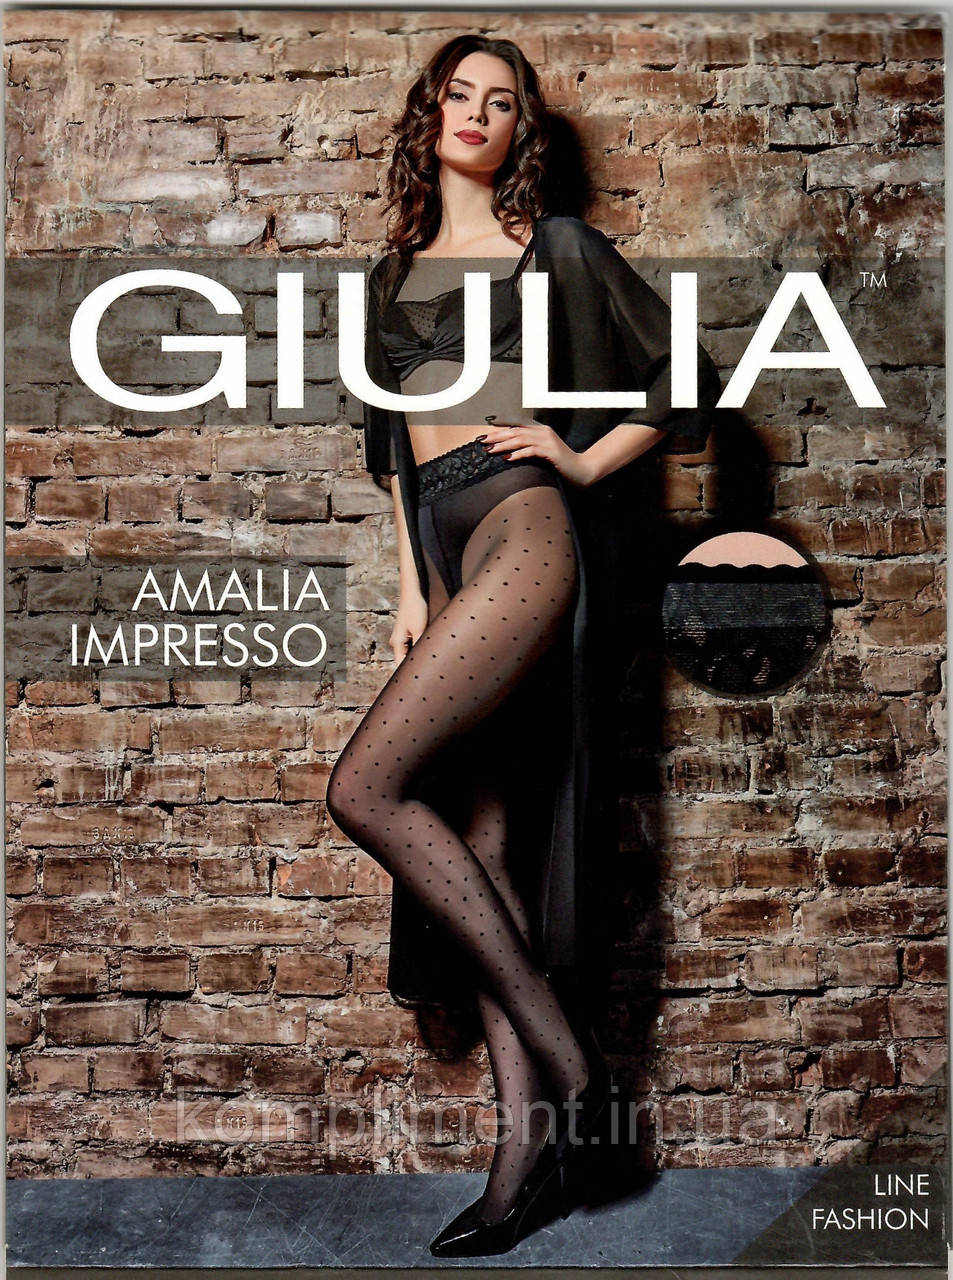 Колготки жіночі в горошок із мереживним поясом GIULIA  Amalia impresso 40 model 1, фото 1